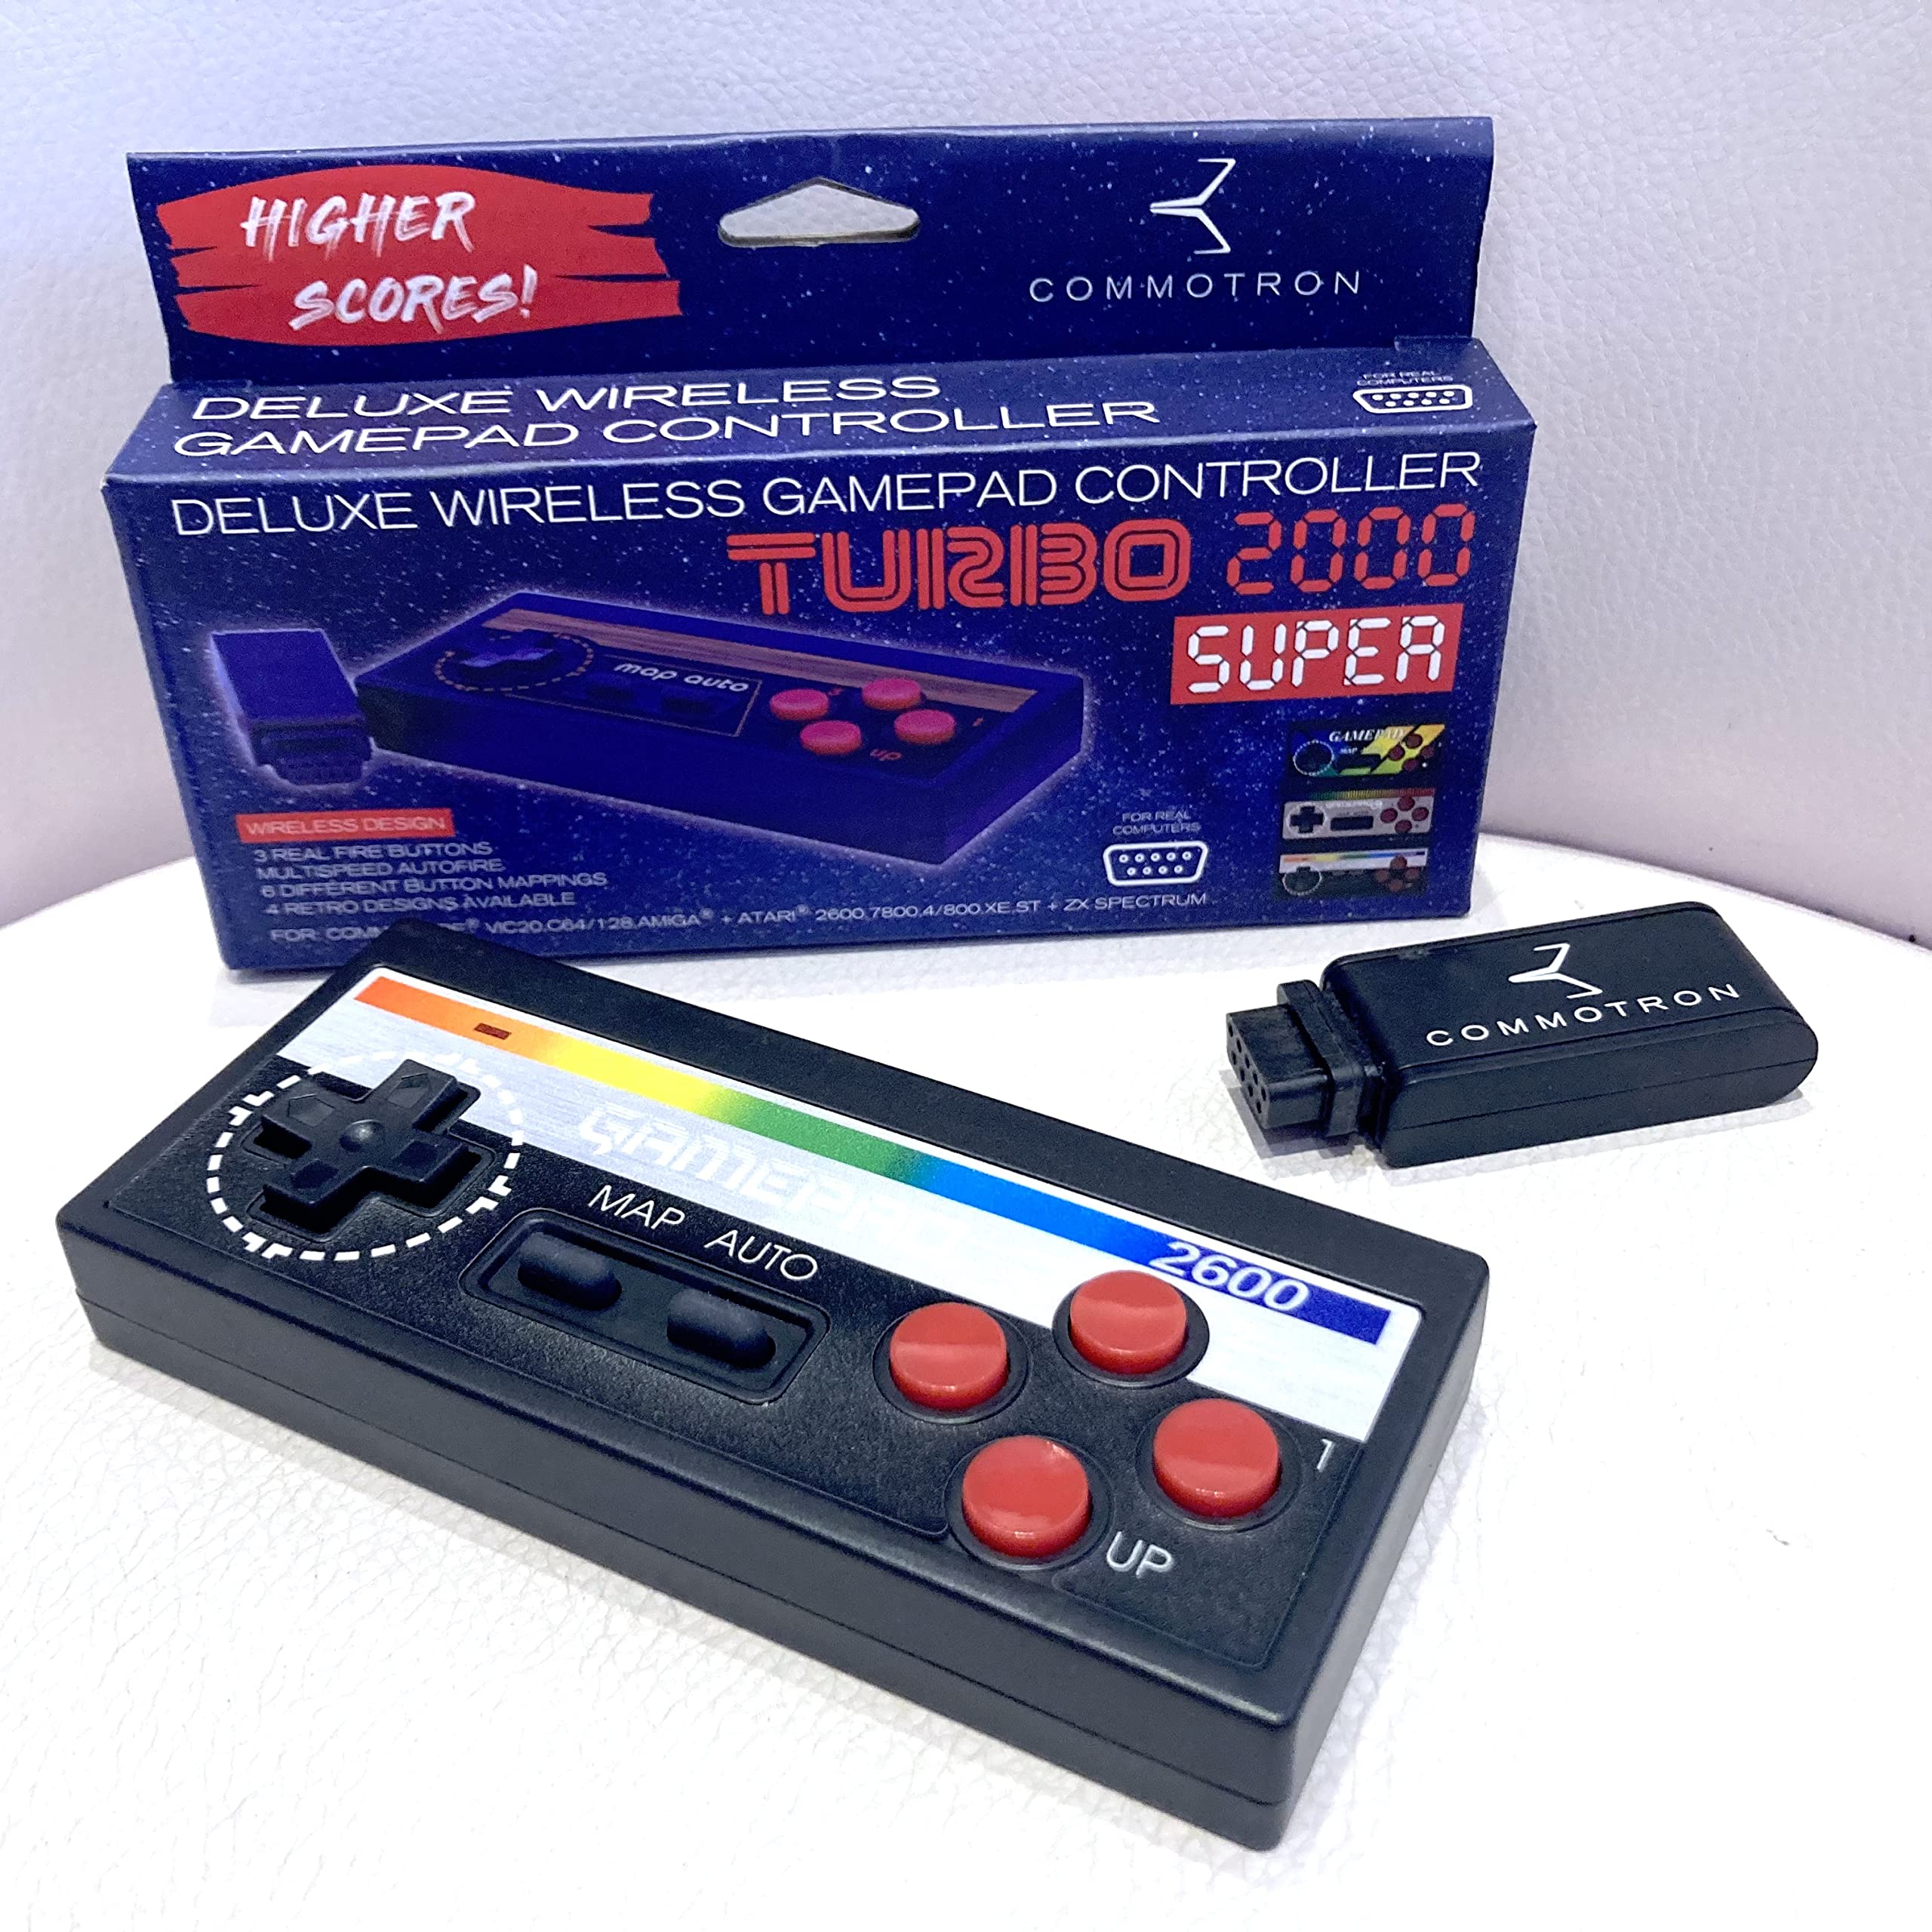 TURBO 2000 Super Retro GamePad (JR 2600)